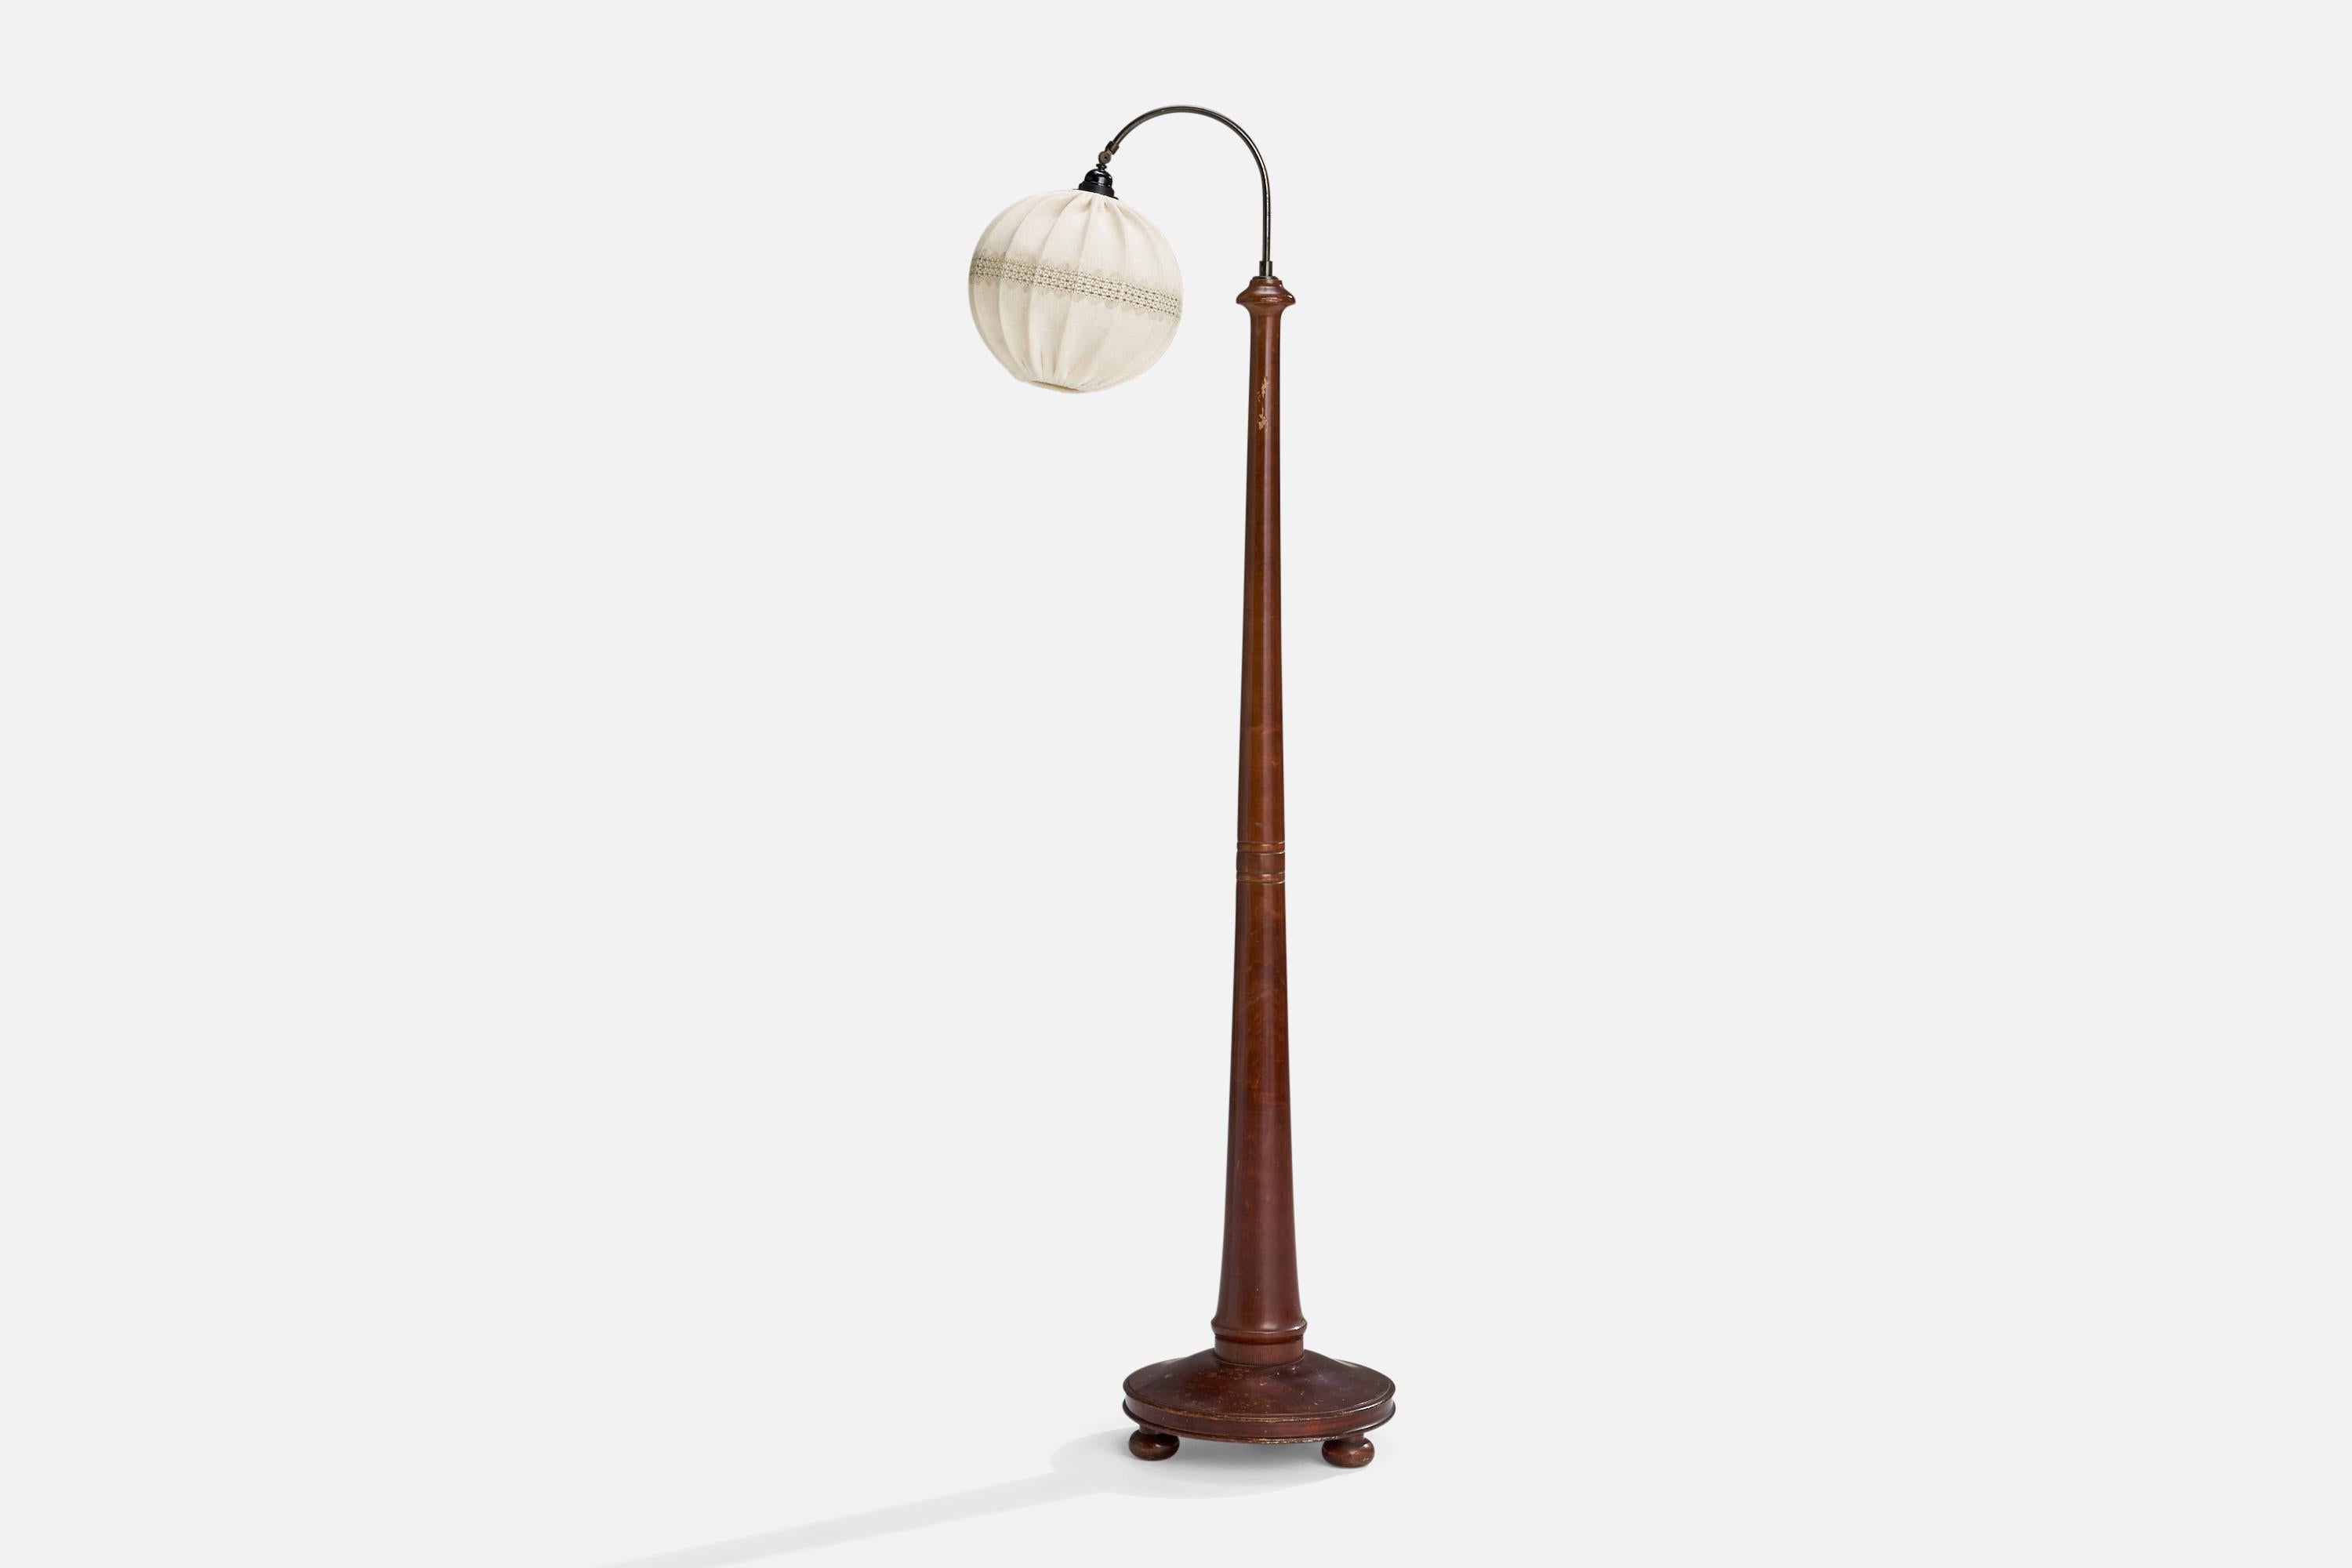 Verstellbare Stehlampe aus Messing, gebeizter Birke und Stoff, entworfen und hergestellt in Schweden, ca. 1930er Jahre.

Gesamtabmessungen (Zoll): 64